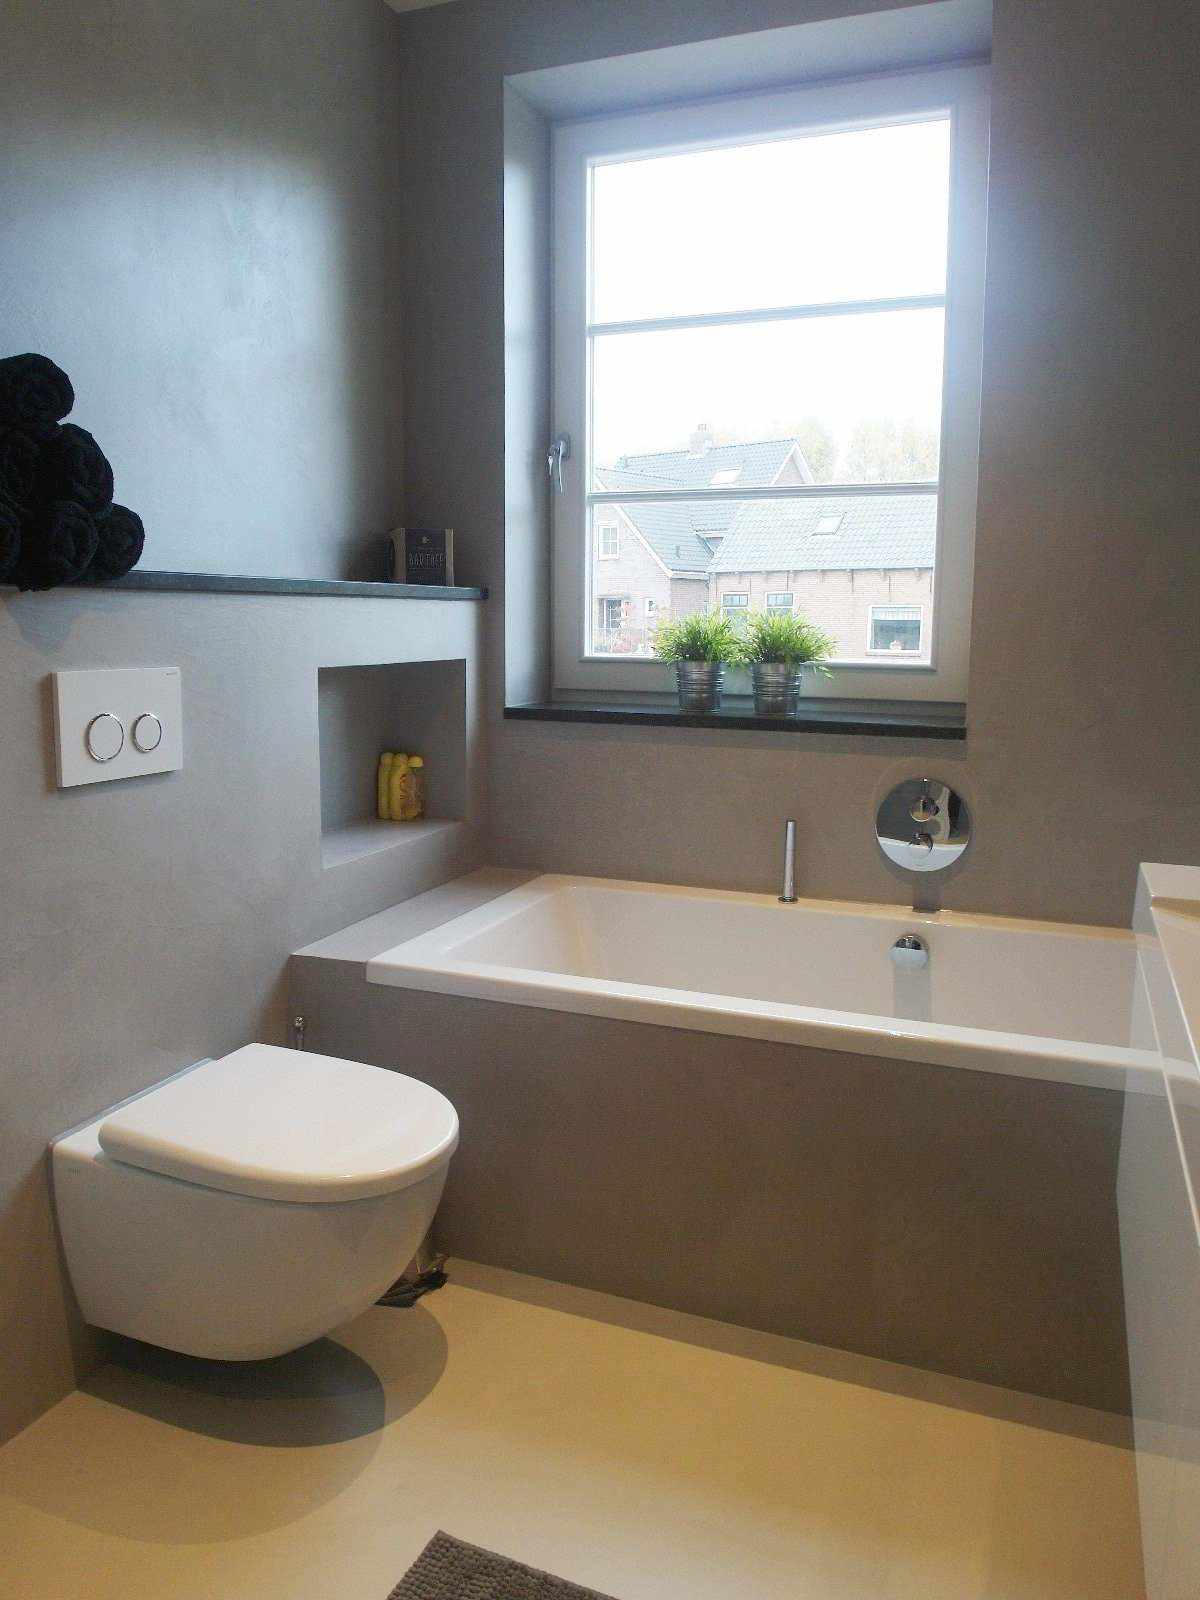 Siva mikrocementna stena in pohištvo v kopalnici na Nizozemskem v projektu Decas.